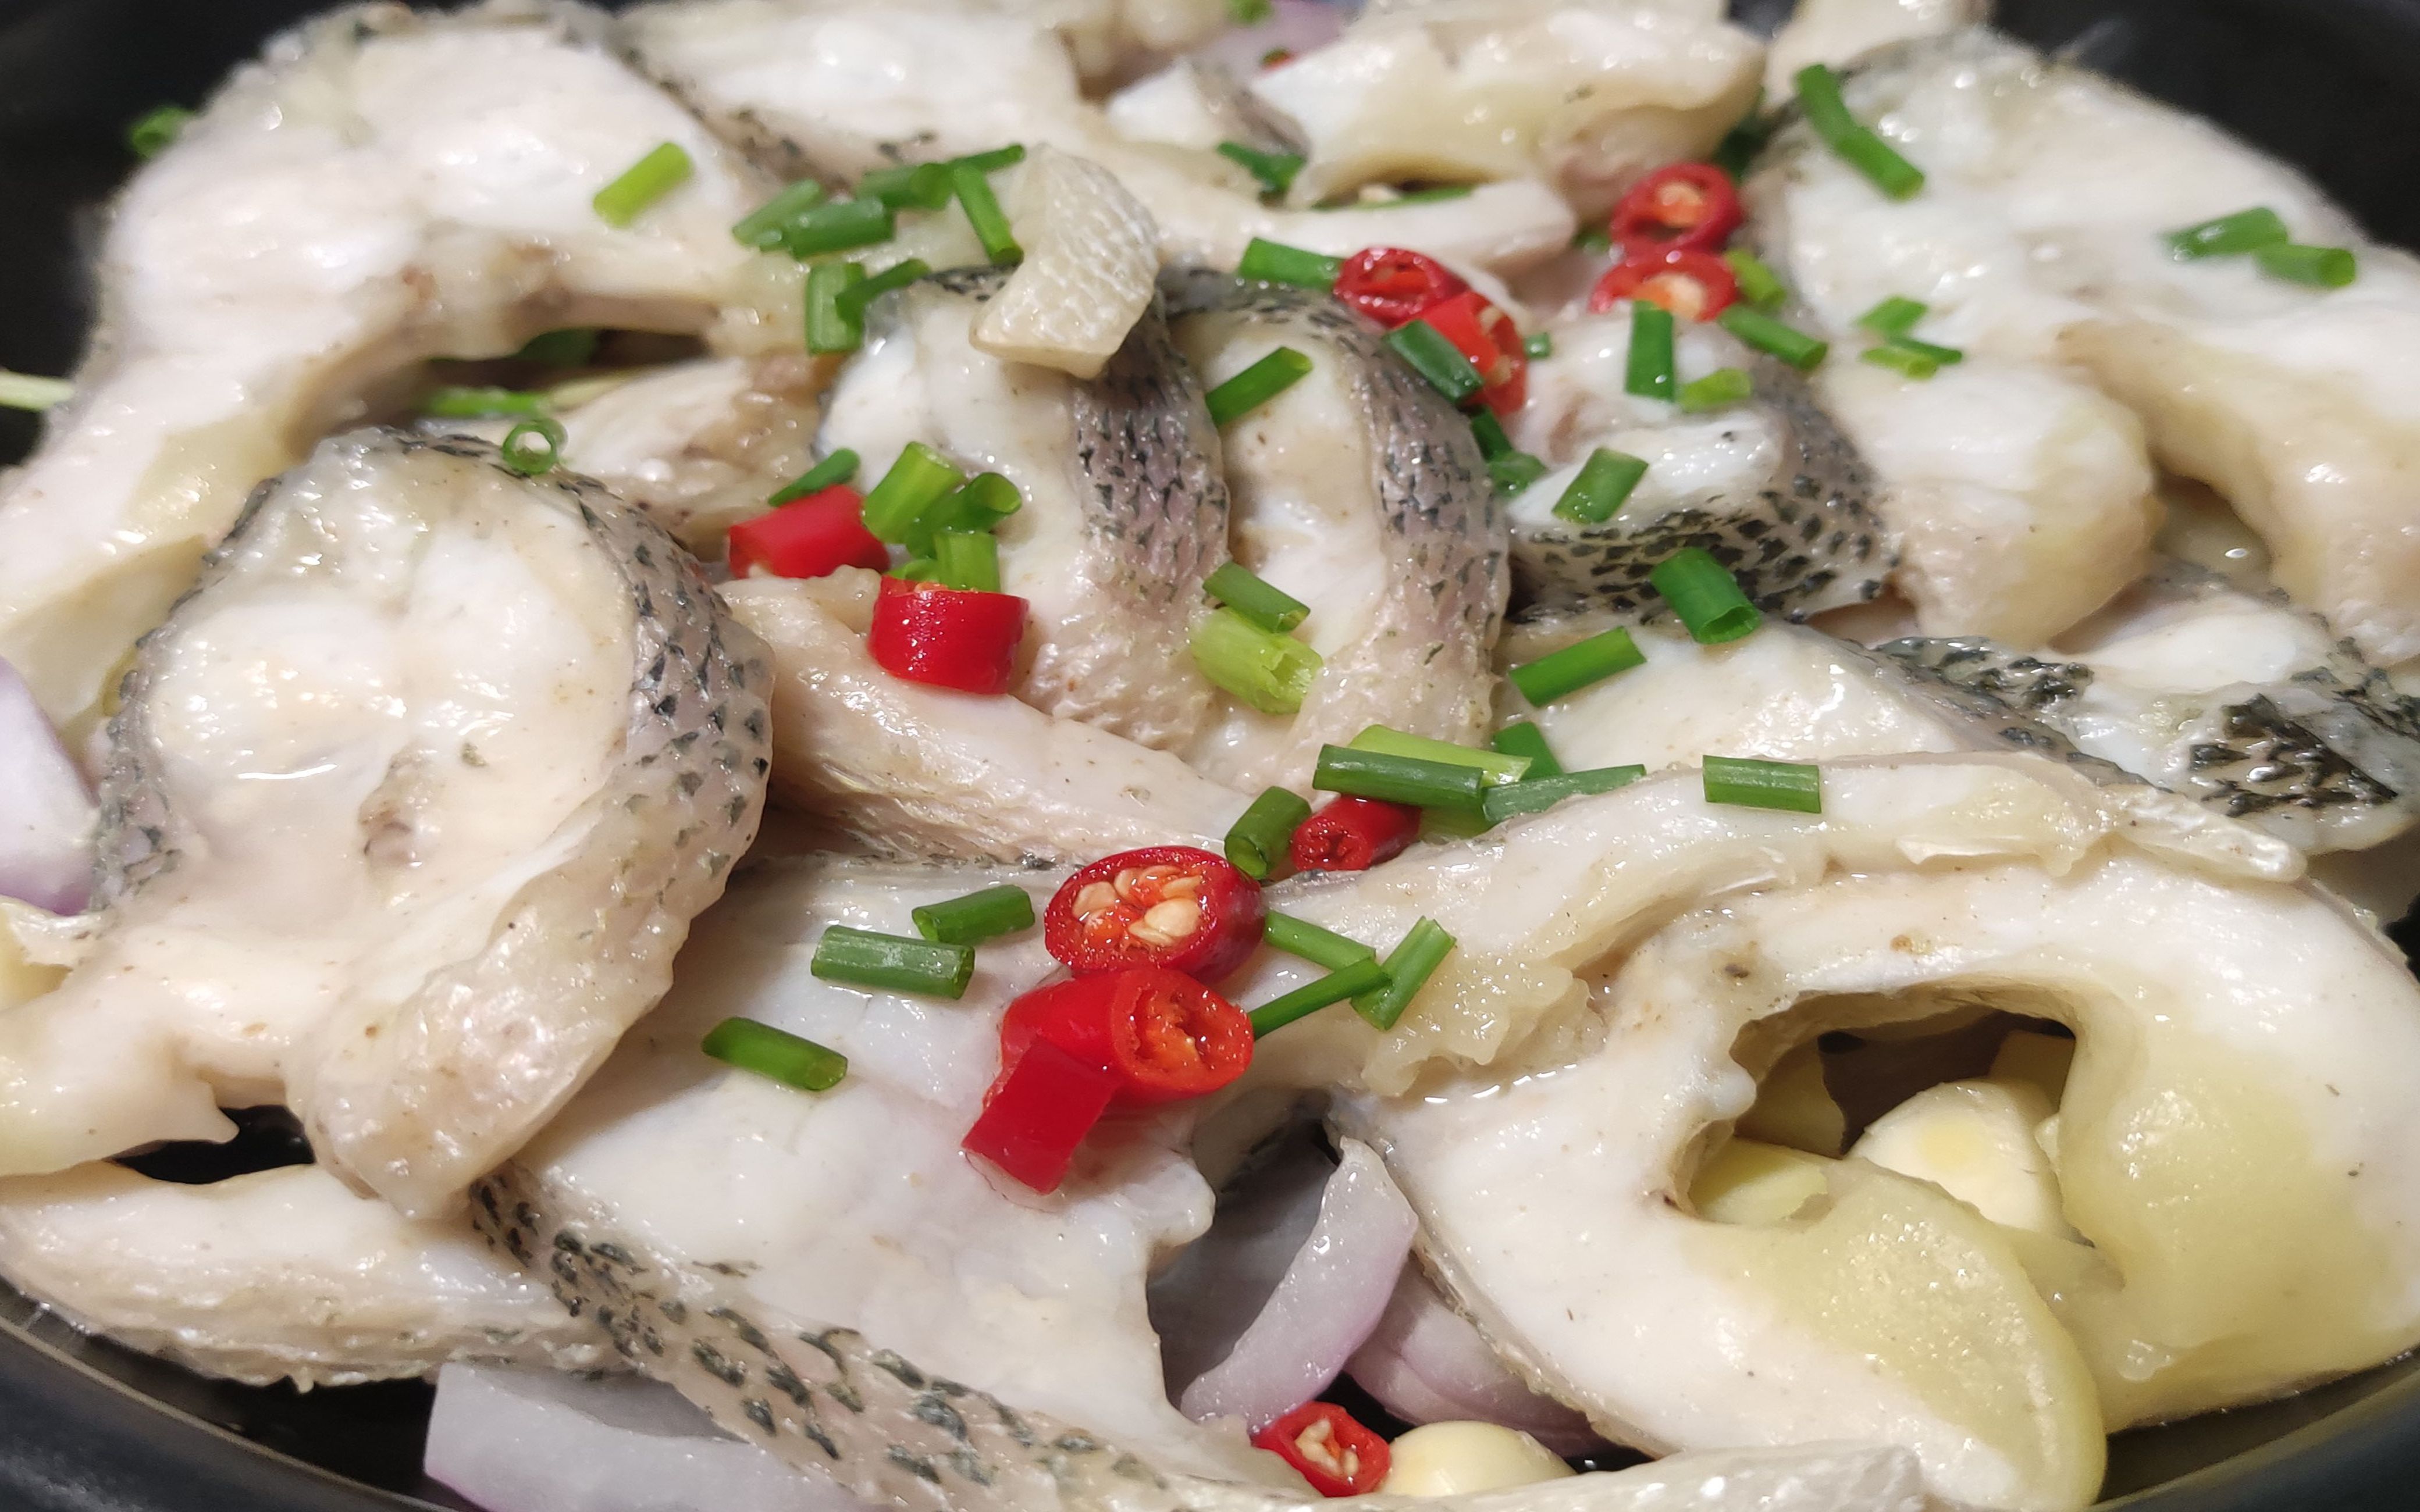 盐焗鲈鱼家常简单做法,不加一滴水,肉质鲜嫩咸香味美简单超好吃